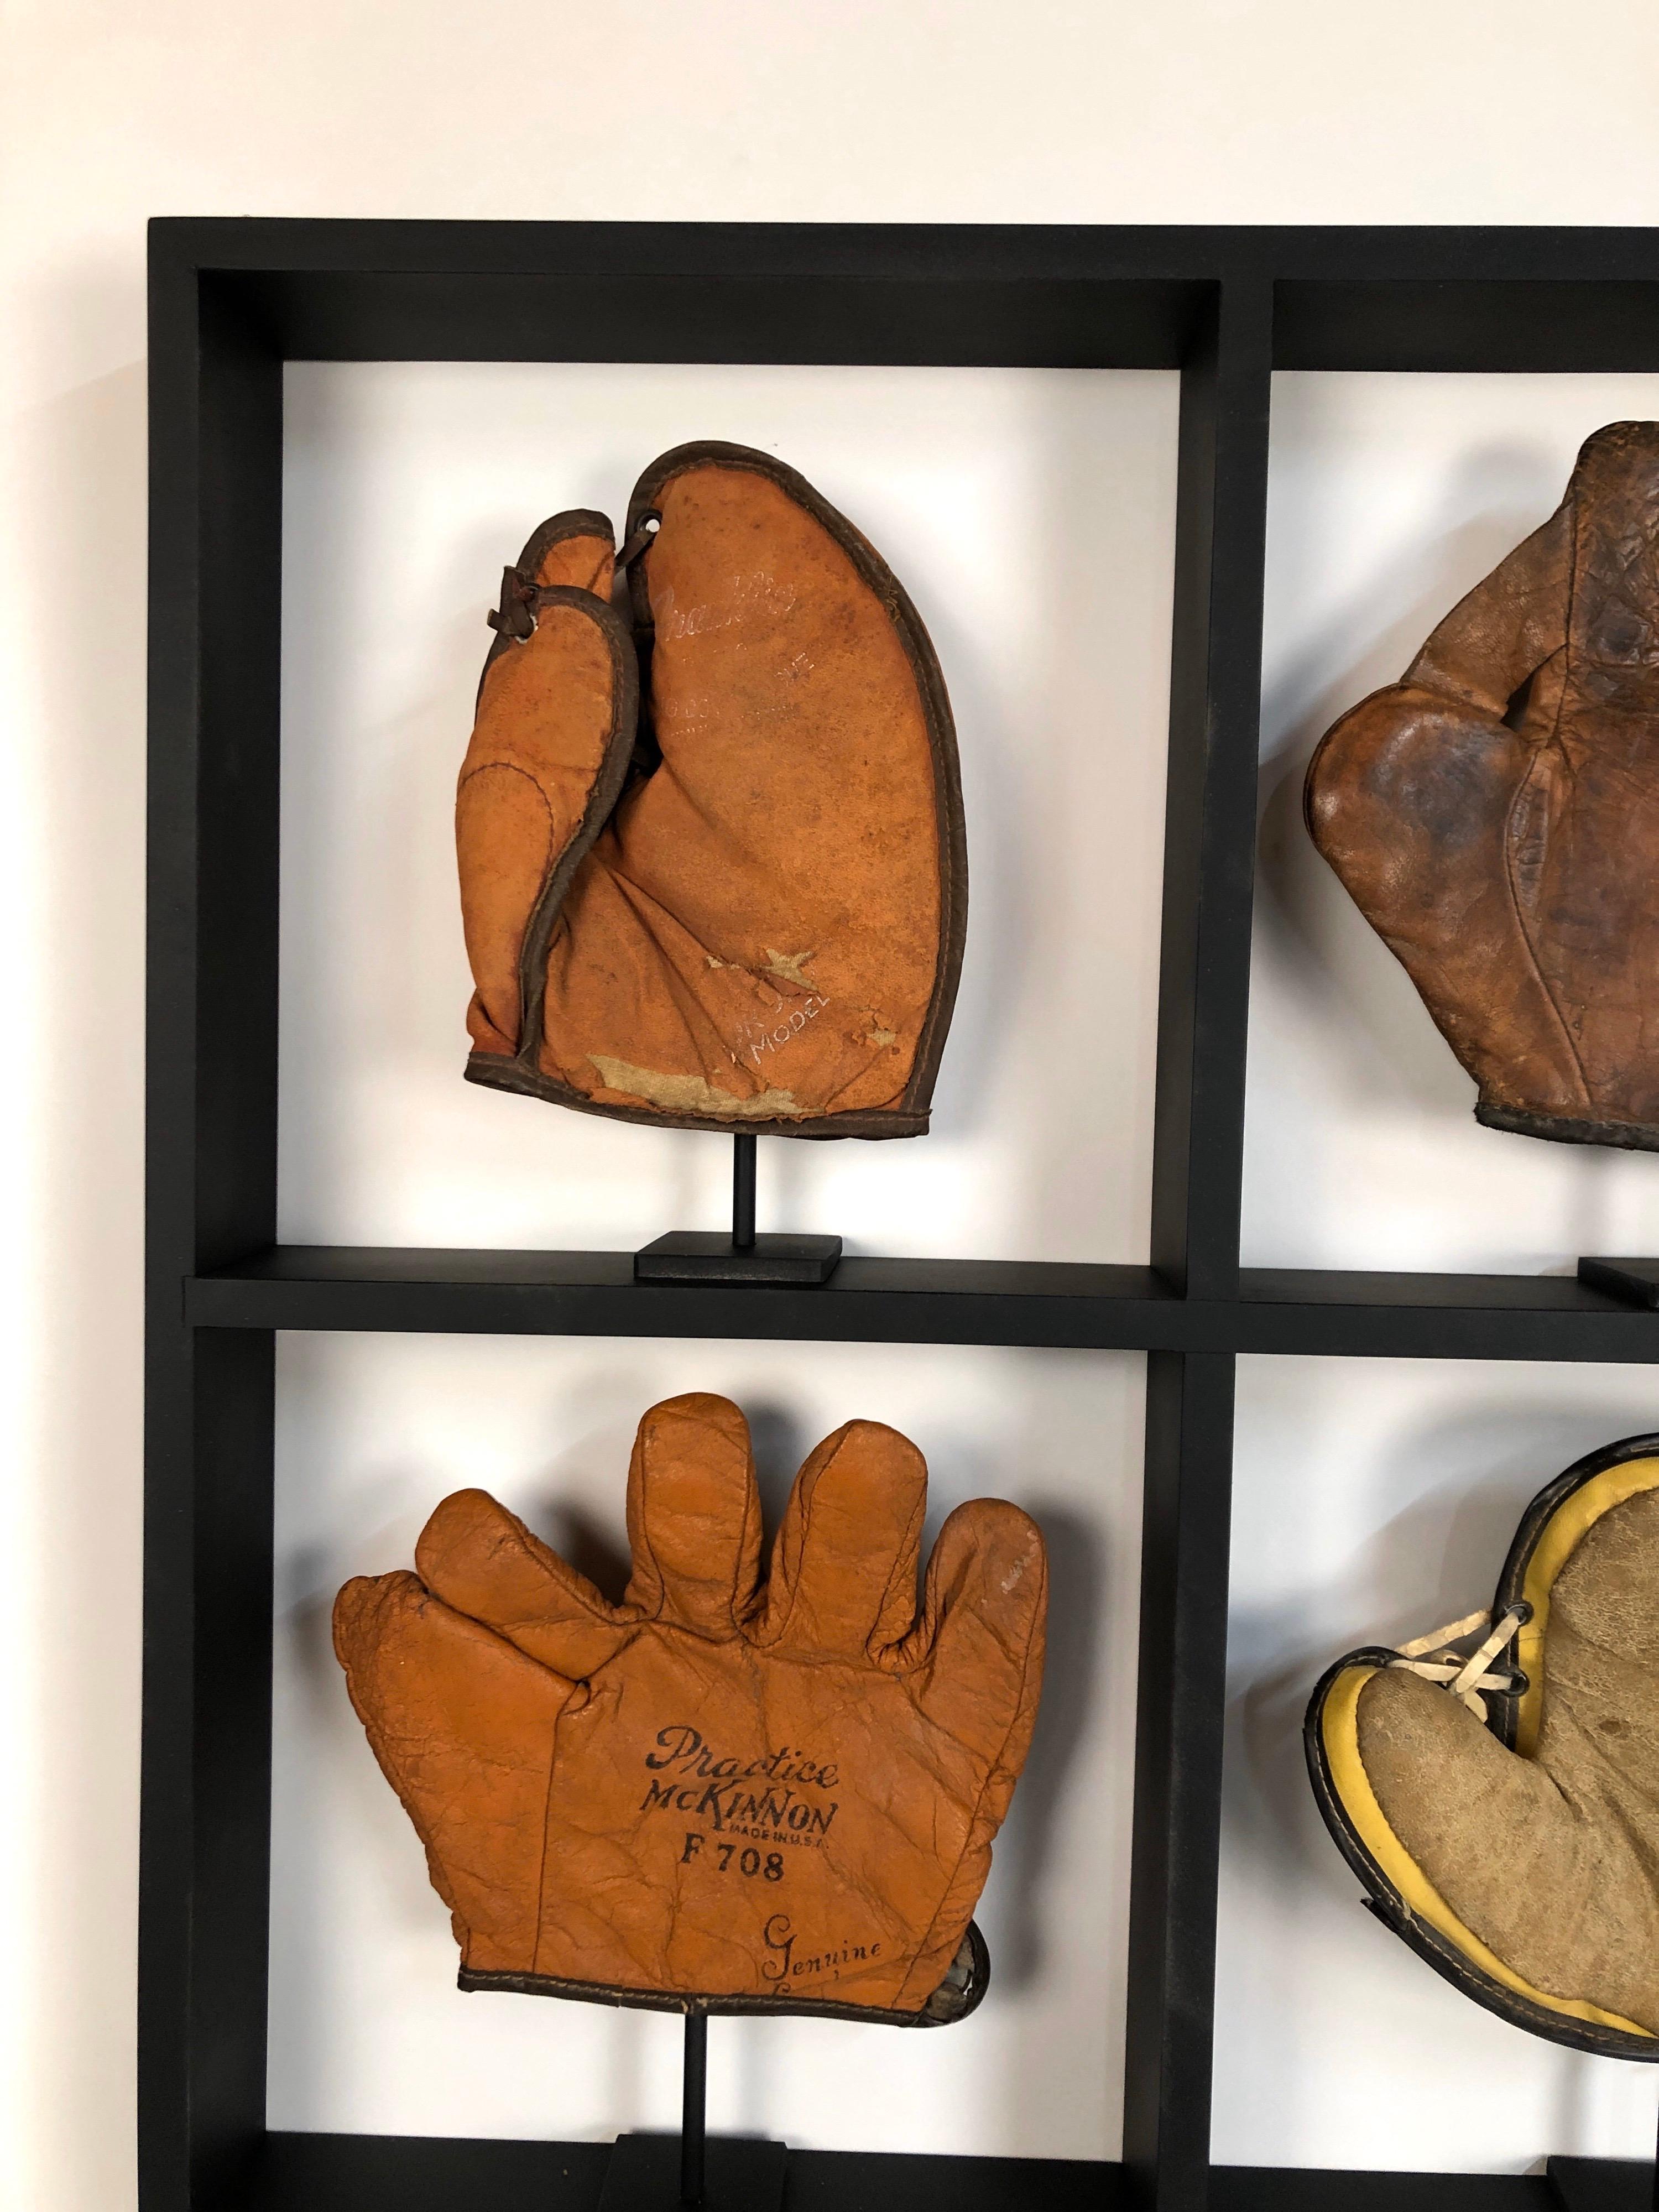 history of baseball gloves